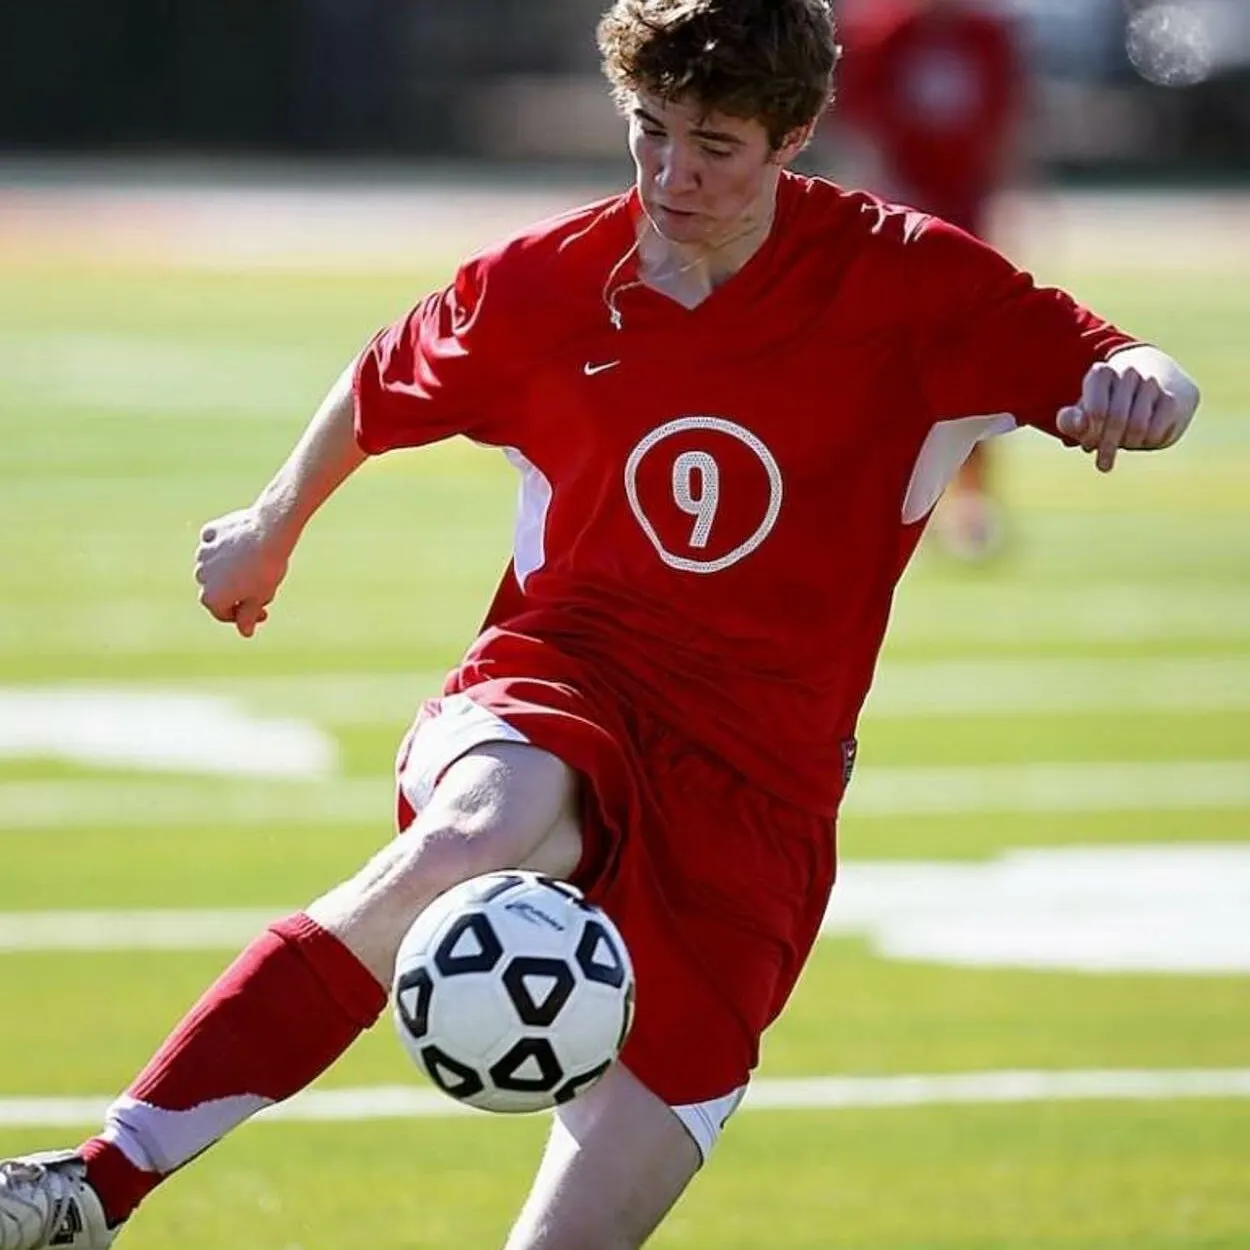 A player kicking a football